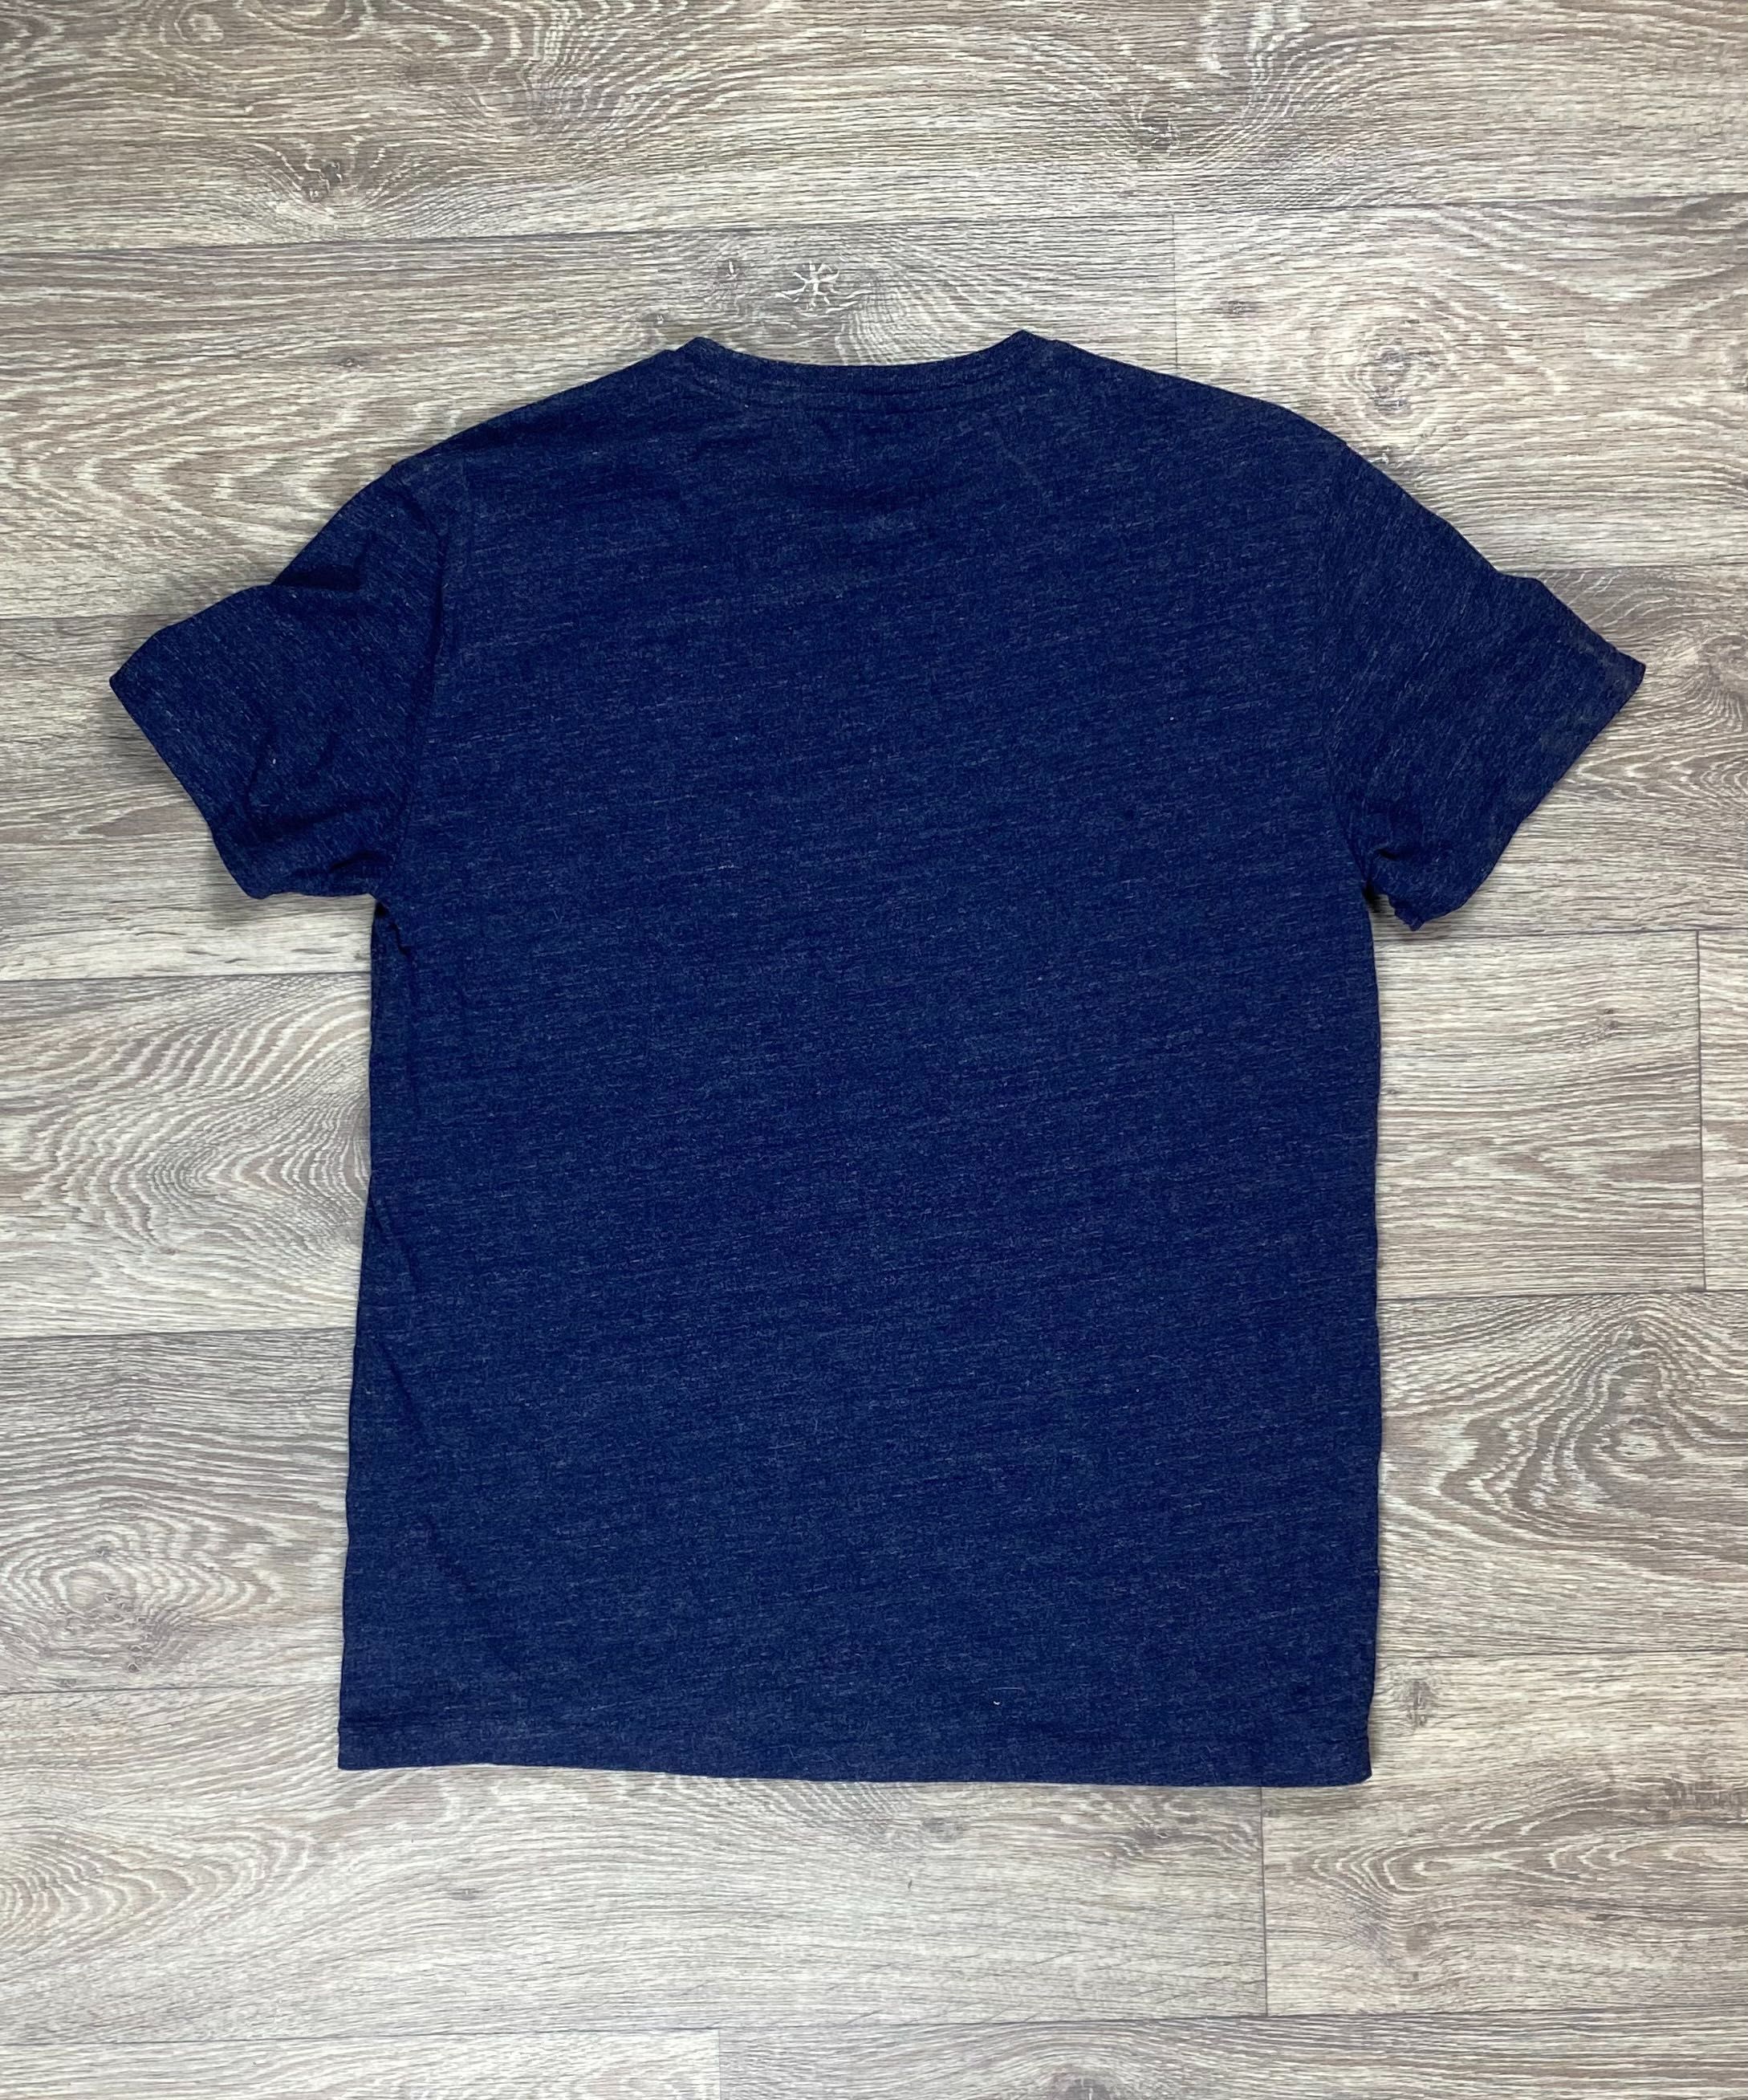 Polo ralph lauren футболка s размер спортивная синяя оригинал